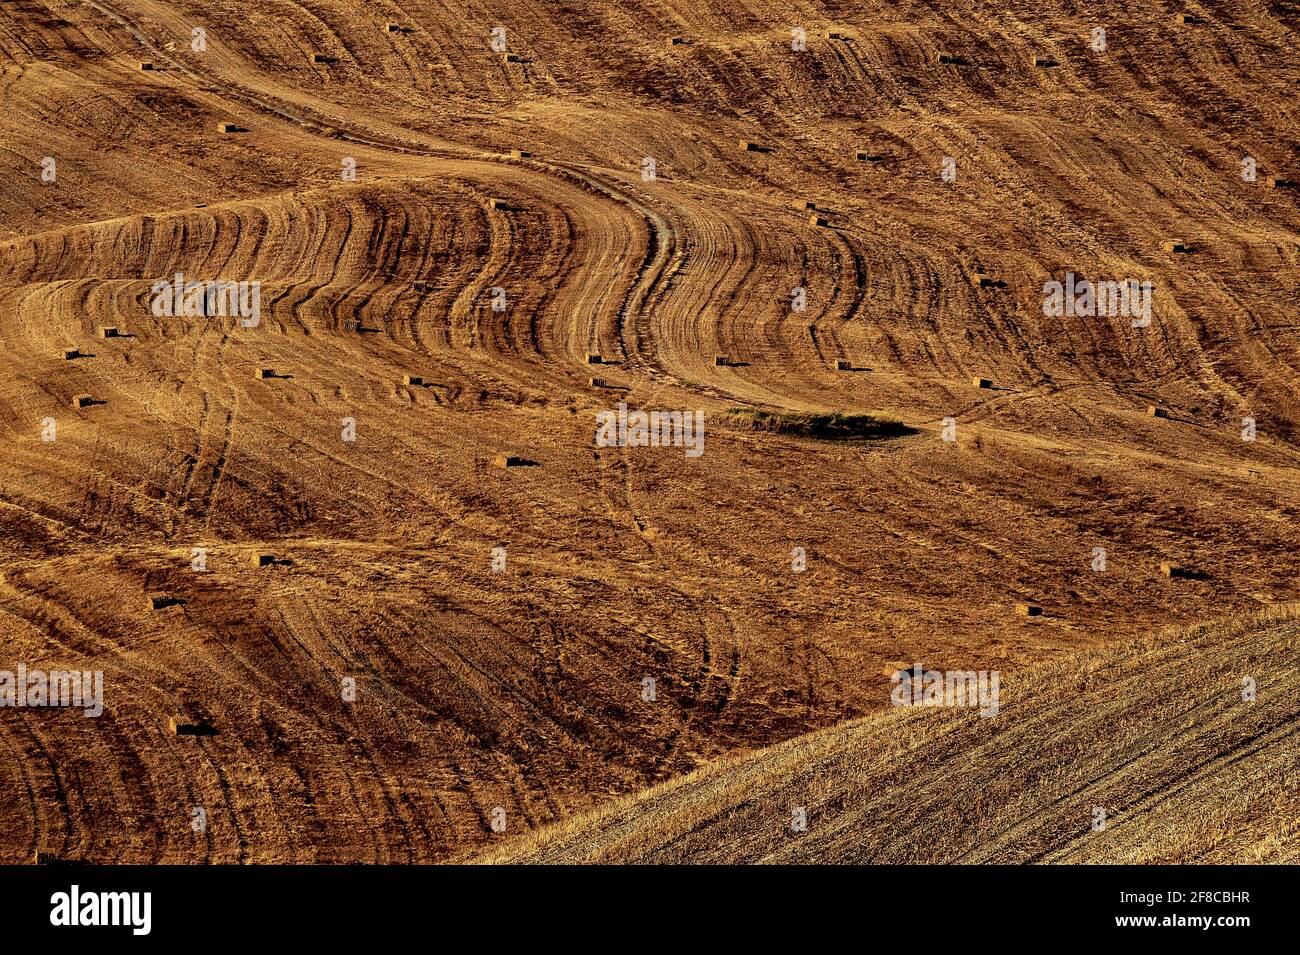 La récolte estivale laisse des ondulations spectaculaires en chaume sur les champs de blé des Crete Senesi, au sud-est de Sienne, en Toscane, en Italie. Les zones de paysage ondulant ici ont été causées par l'érosion de l'eau à l'argile molle et les dépôts de sable ont laissé il y a des millions d'années par une mer de Pliocène Epoch. L'argile, aussi connue sous le nom de mattaione, est parfois moulée par nature en un «paysage lunaire» de hilocks gris-blancs, de monticules et de falaises, souvent sans terre végétale ou de végétation. Banque D'Images